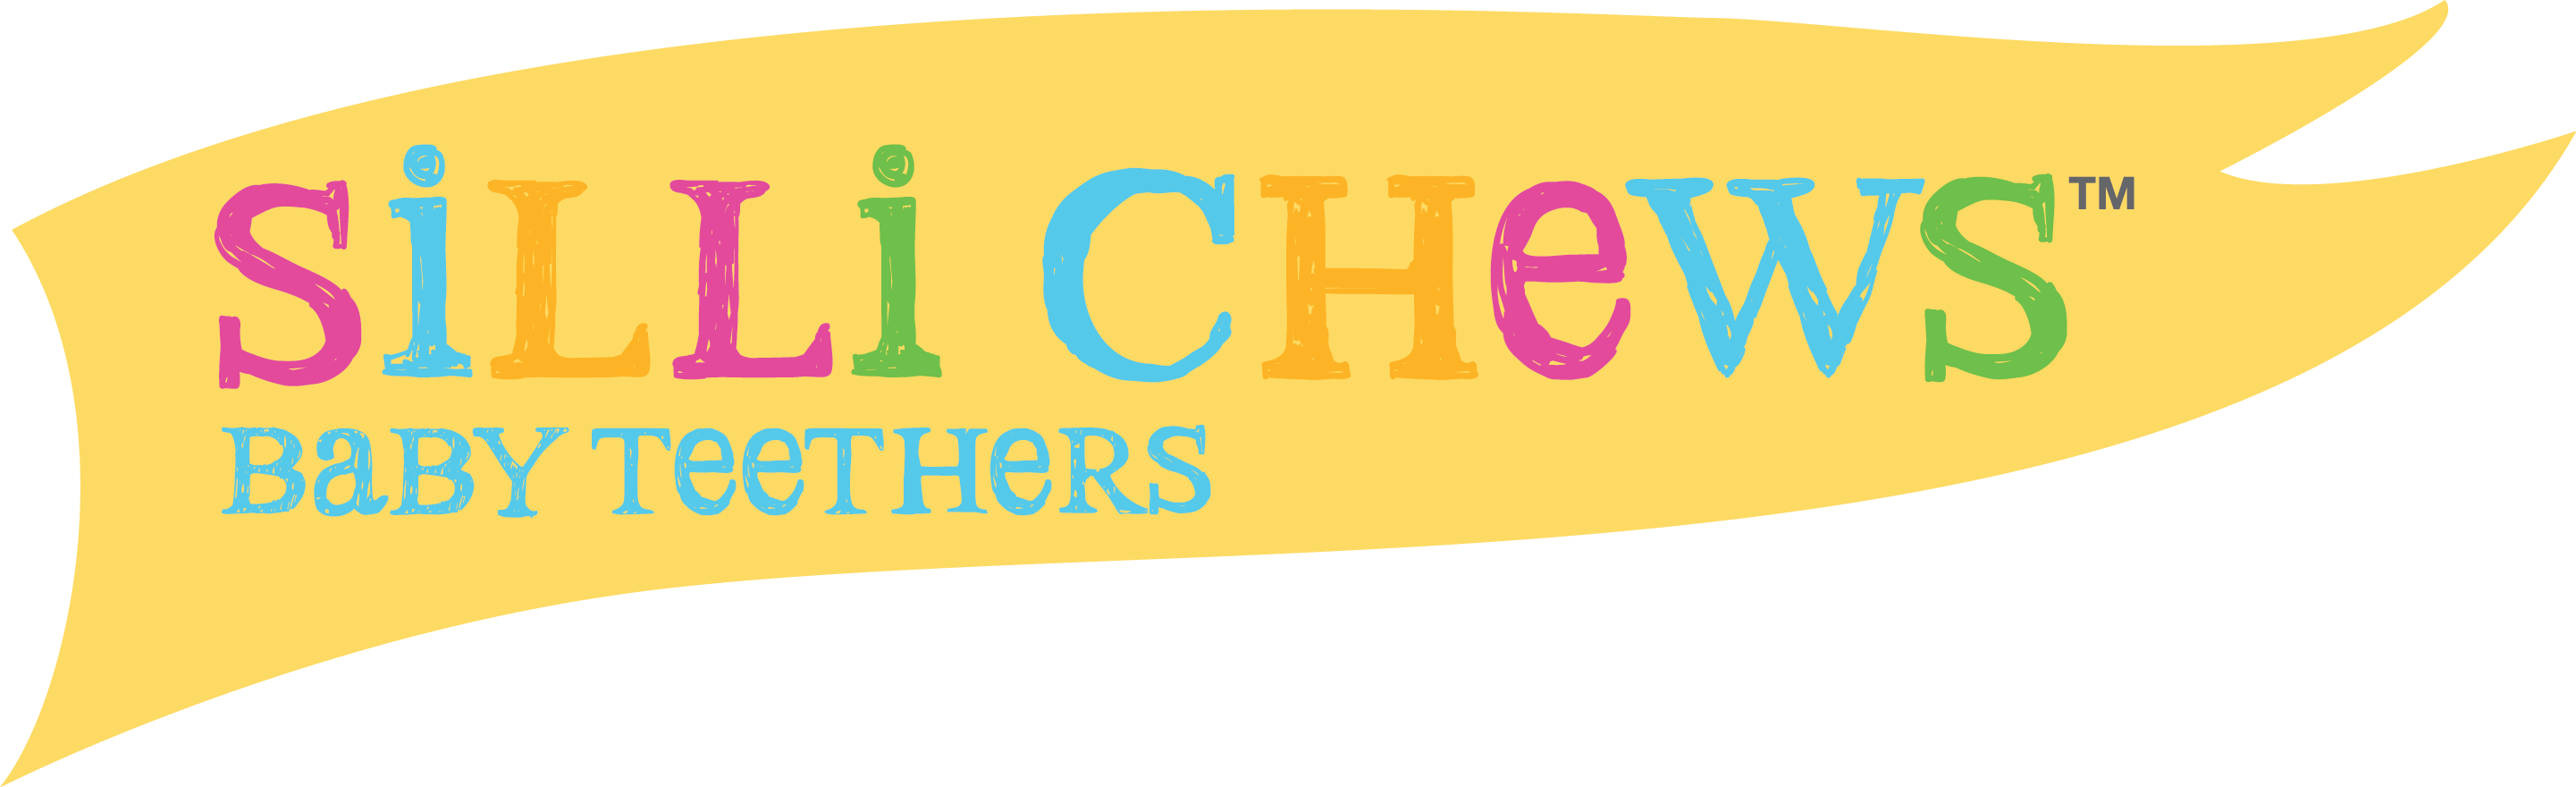 Silli Chews baby teethers logo